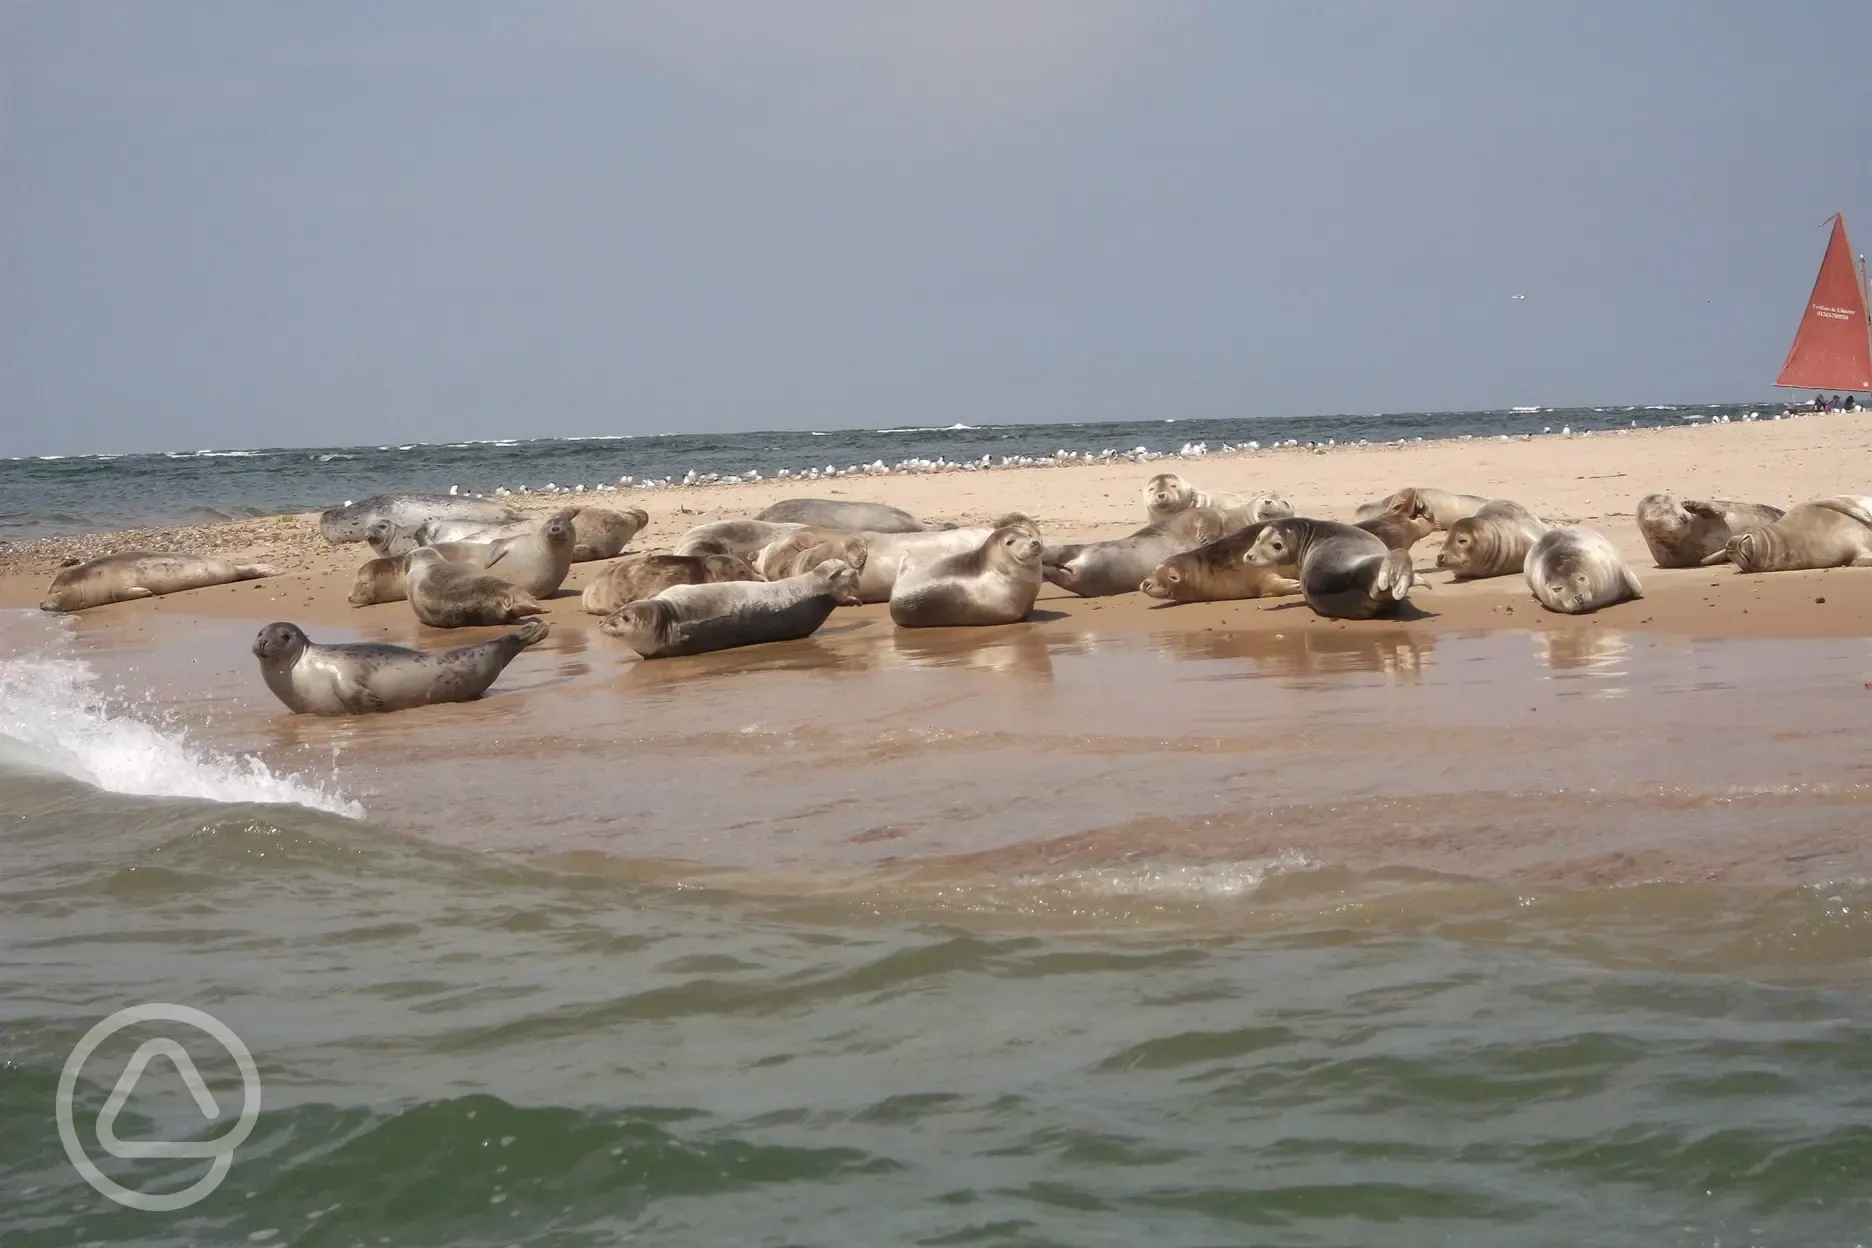 Seals at Blakeney Point